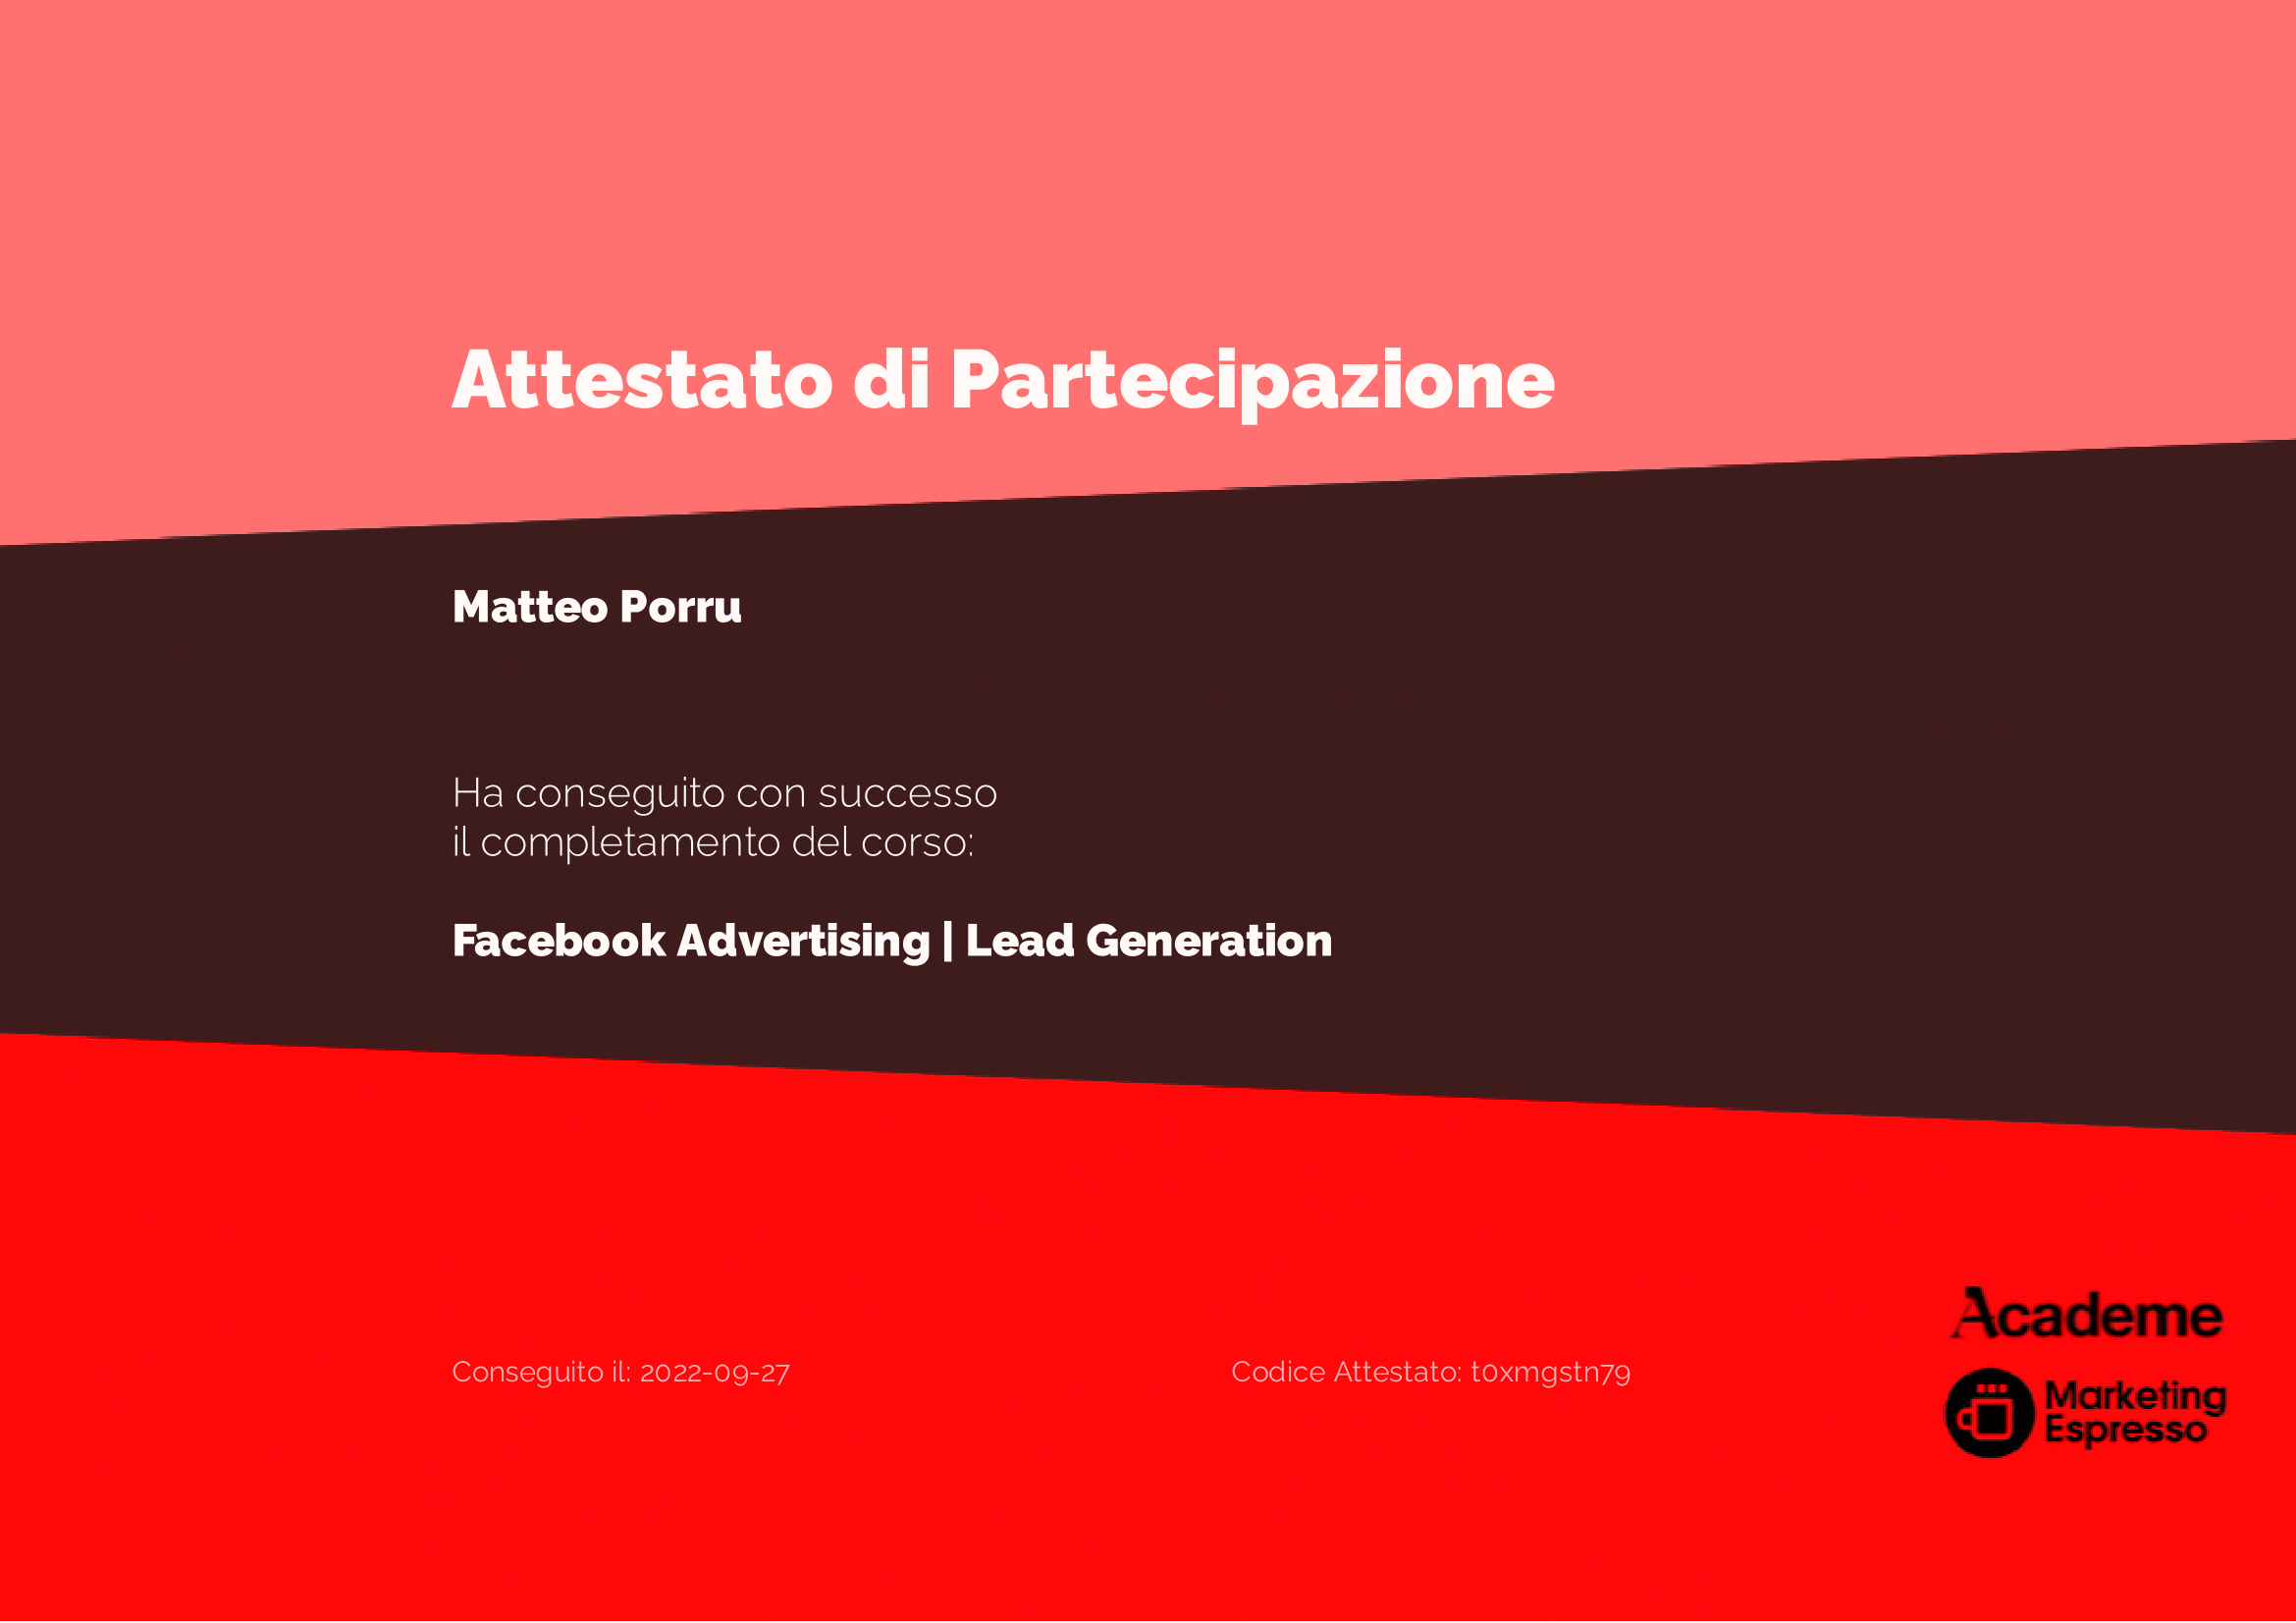 Matteo Porru - 2022-09-27 (1)-1